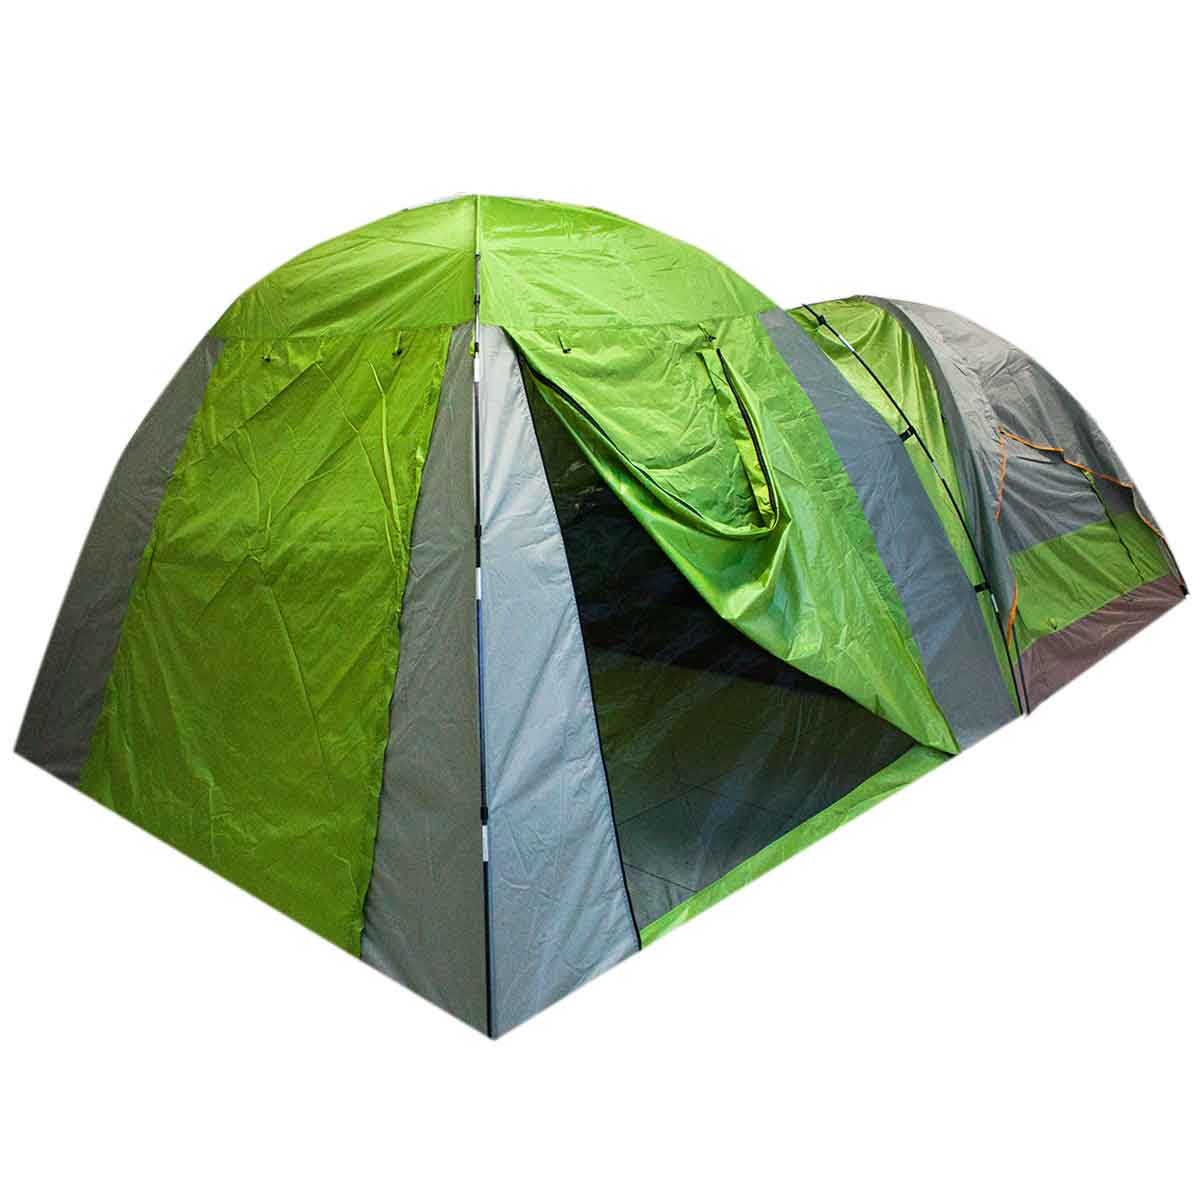 Barraca Camping 4 Pessoas Iglu Tenda Bolsa Acampamento 260cm